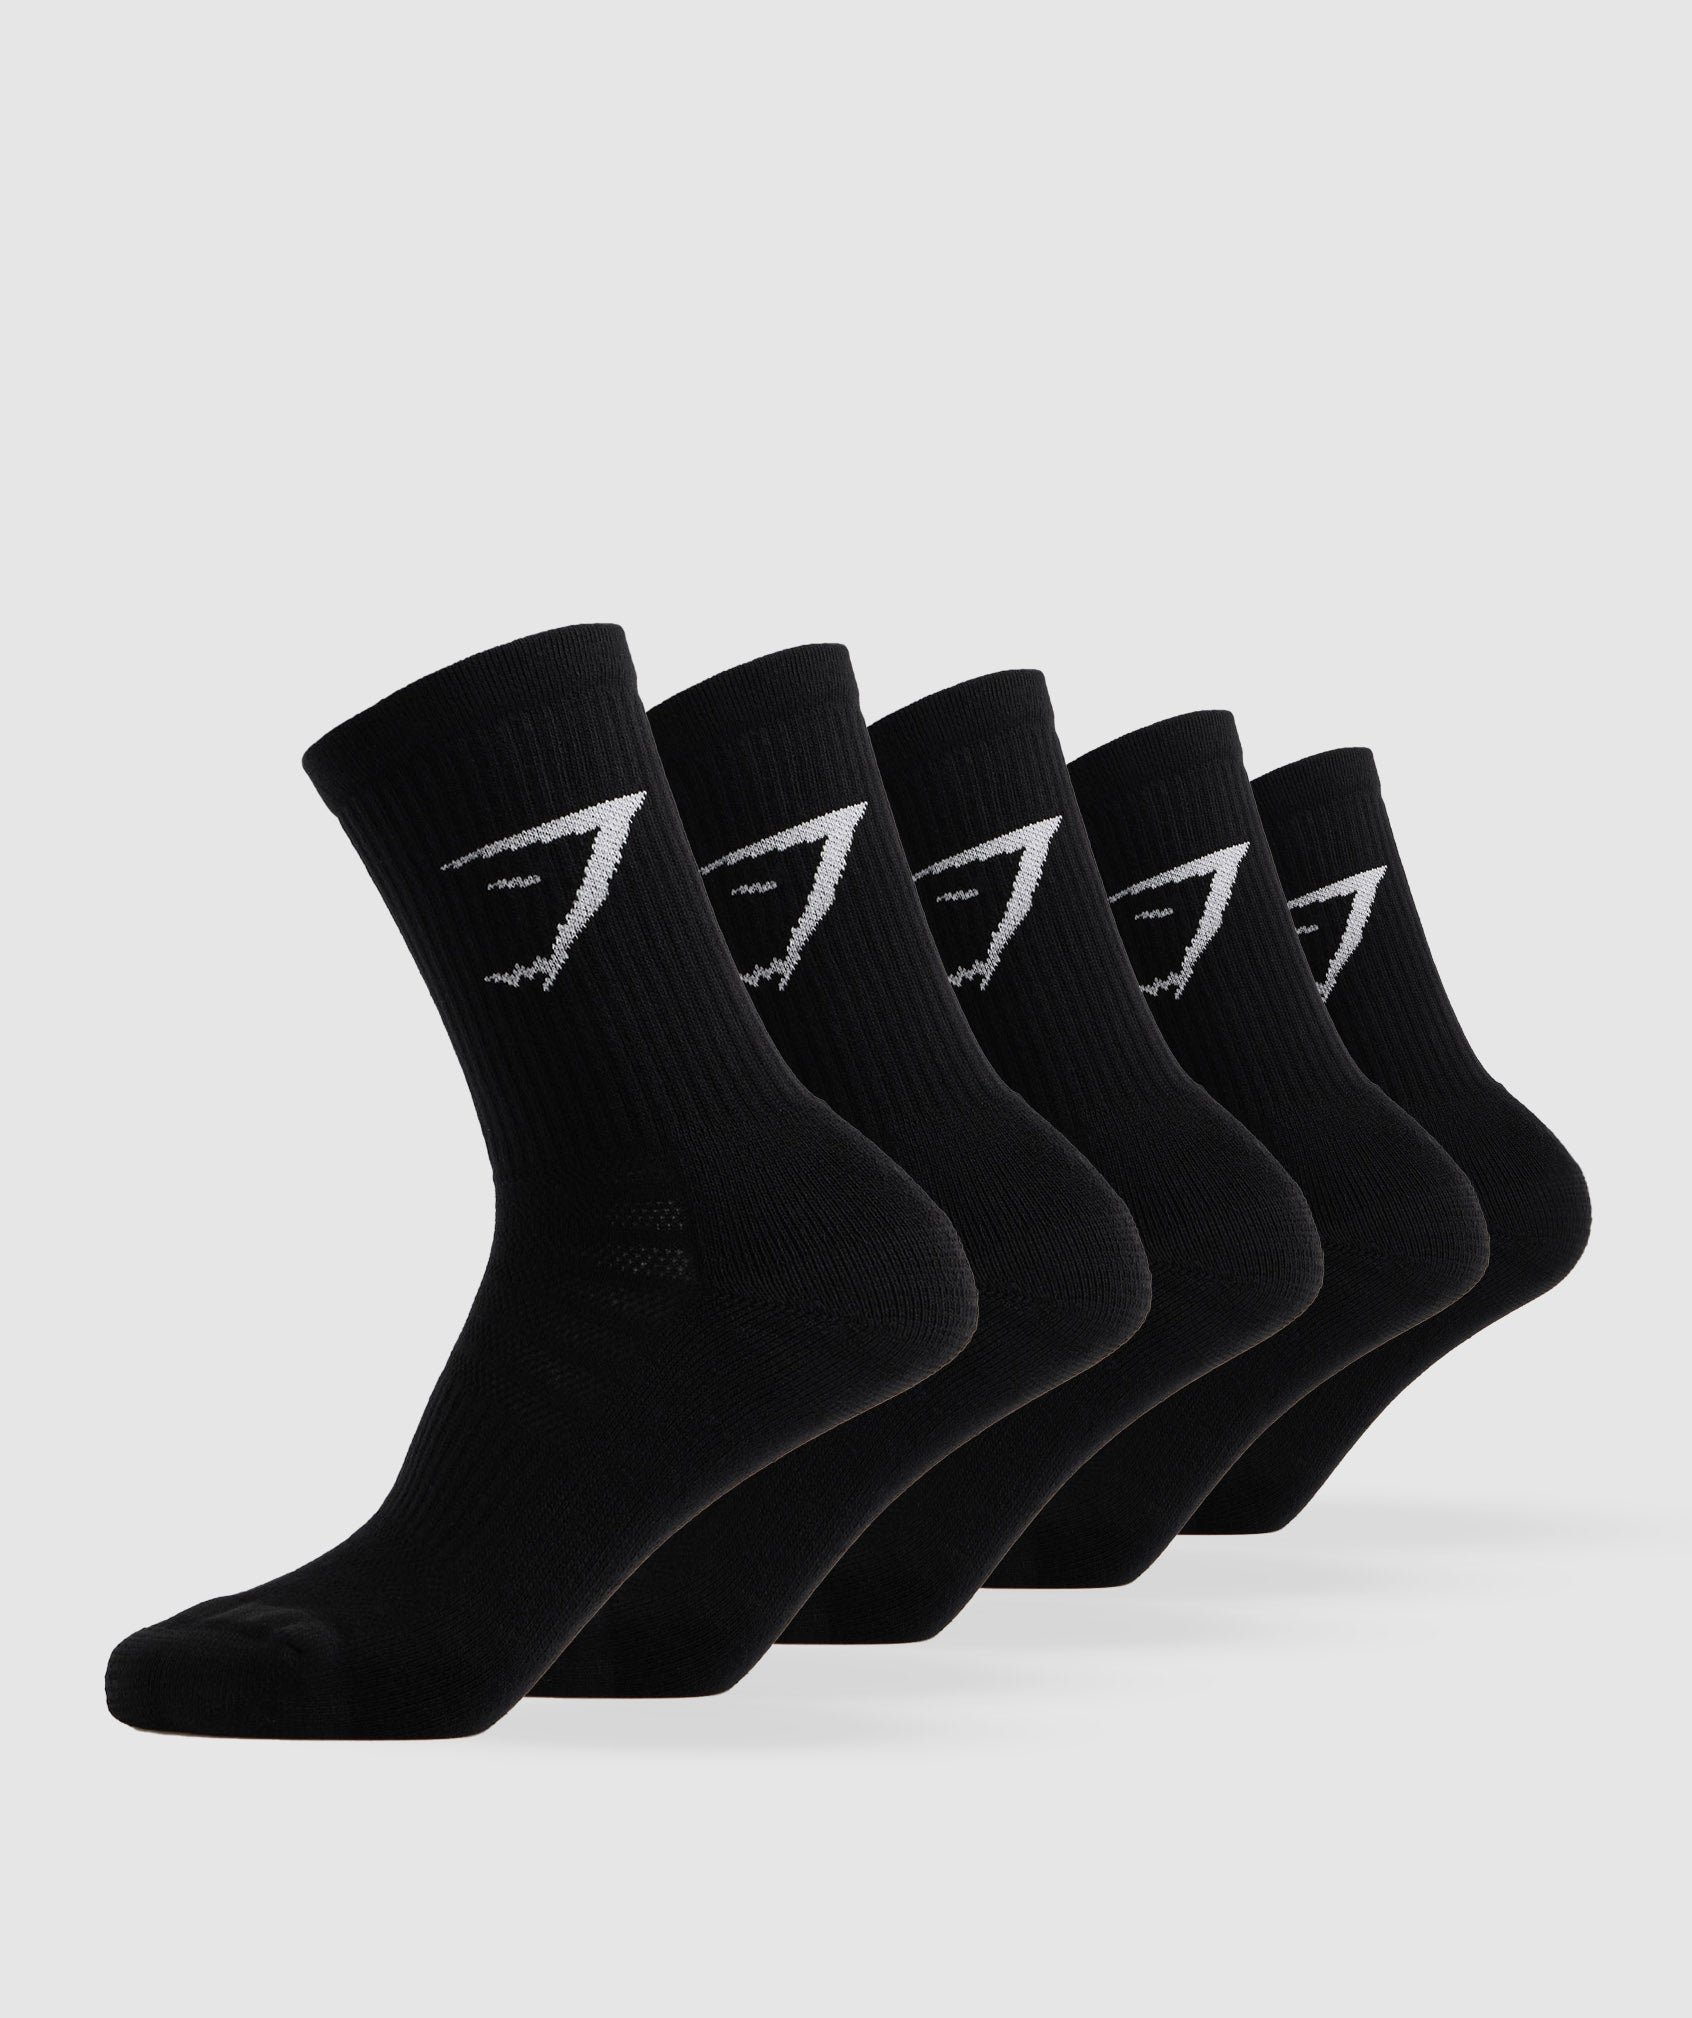 Crew Socks 5pk in Black